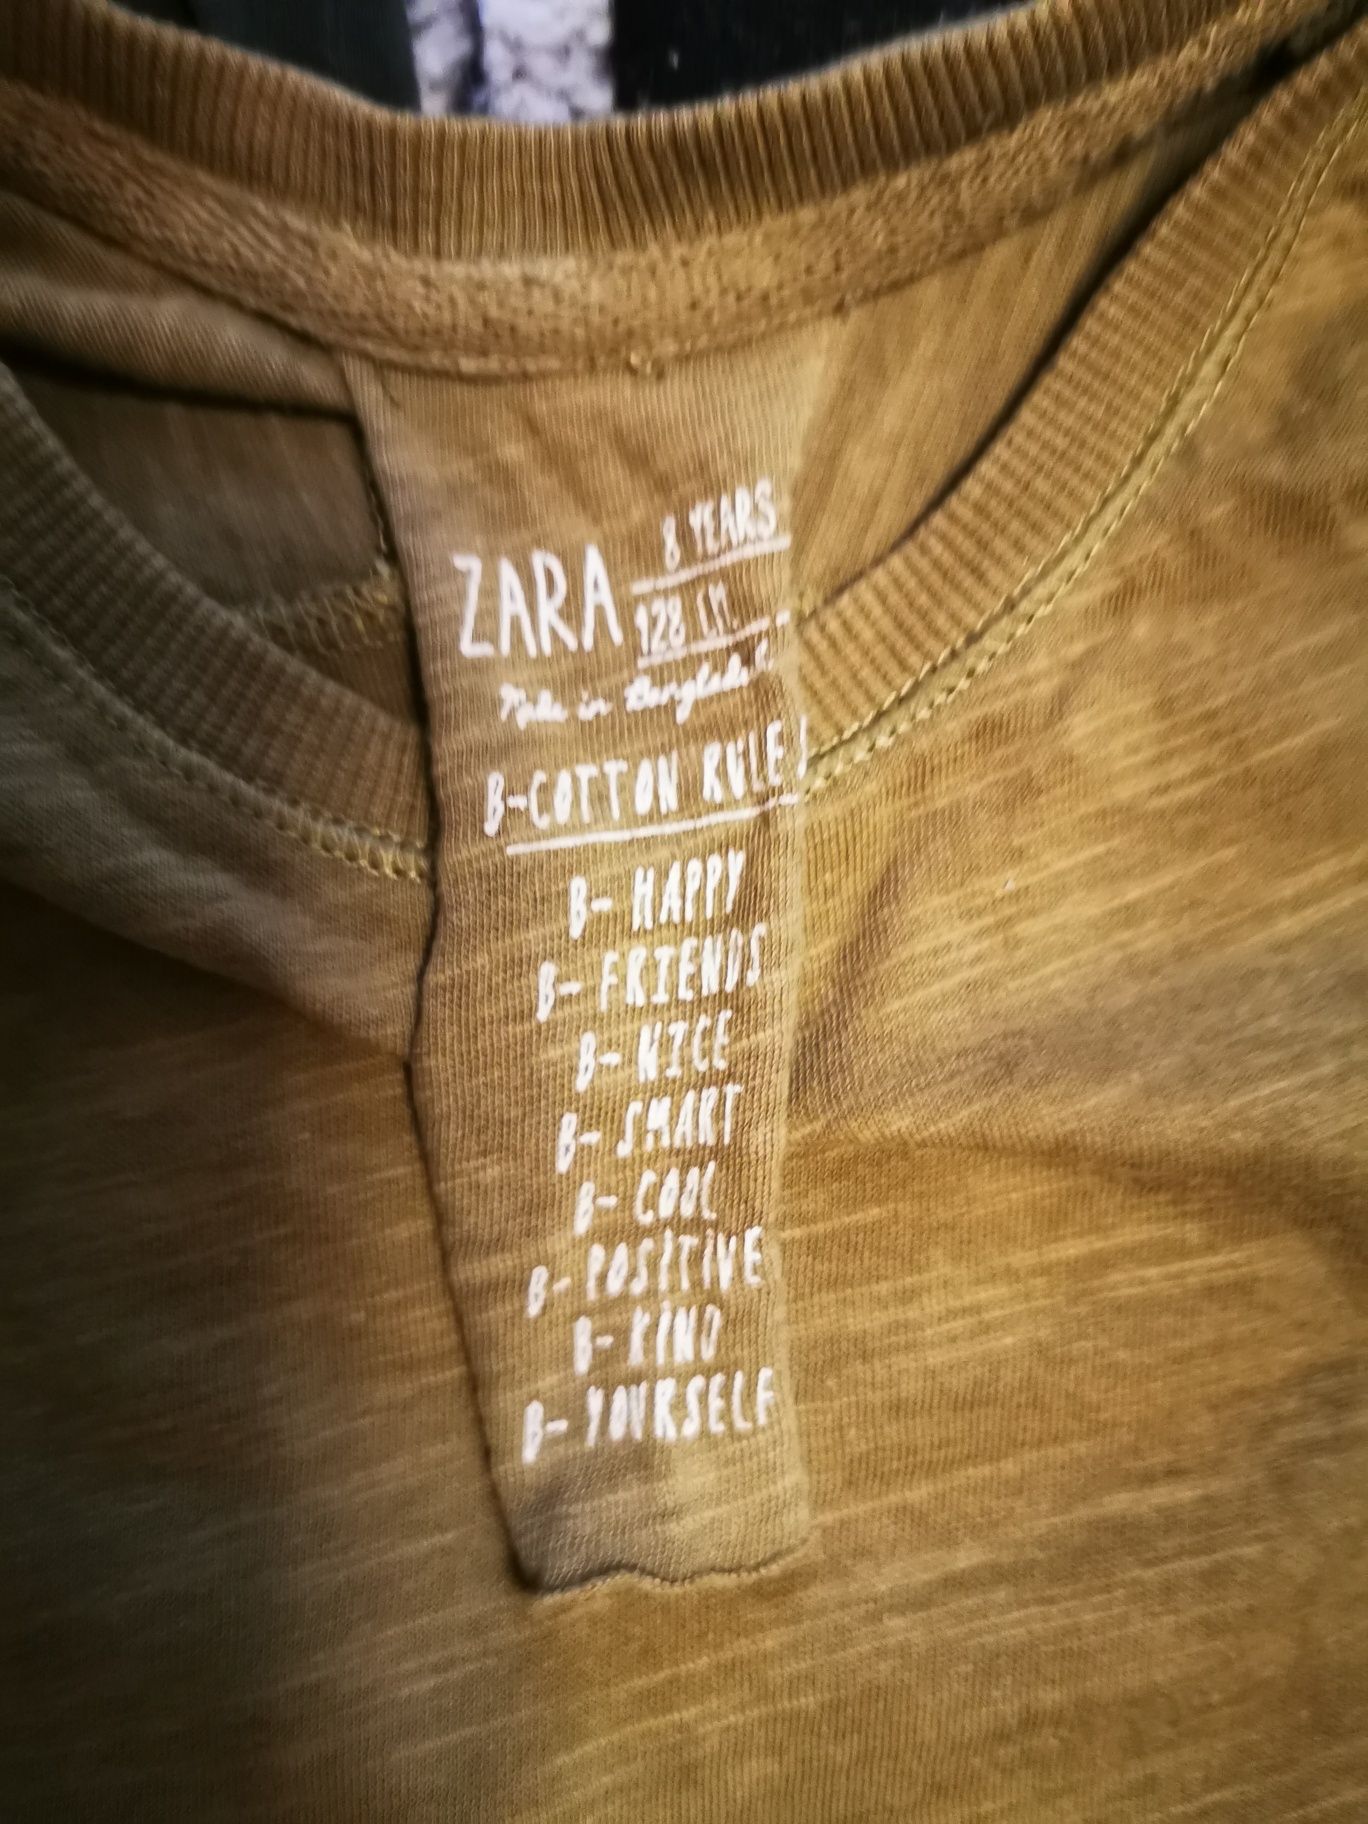 Tricouri Zara, Mango, H&M